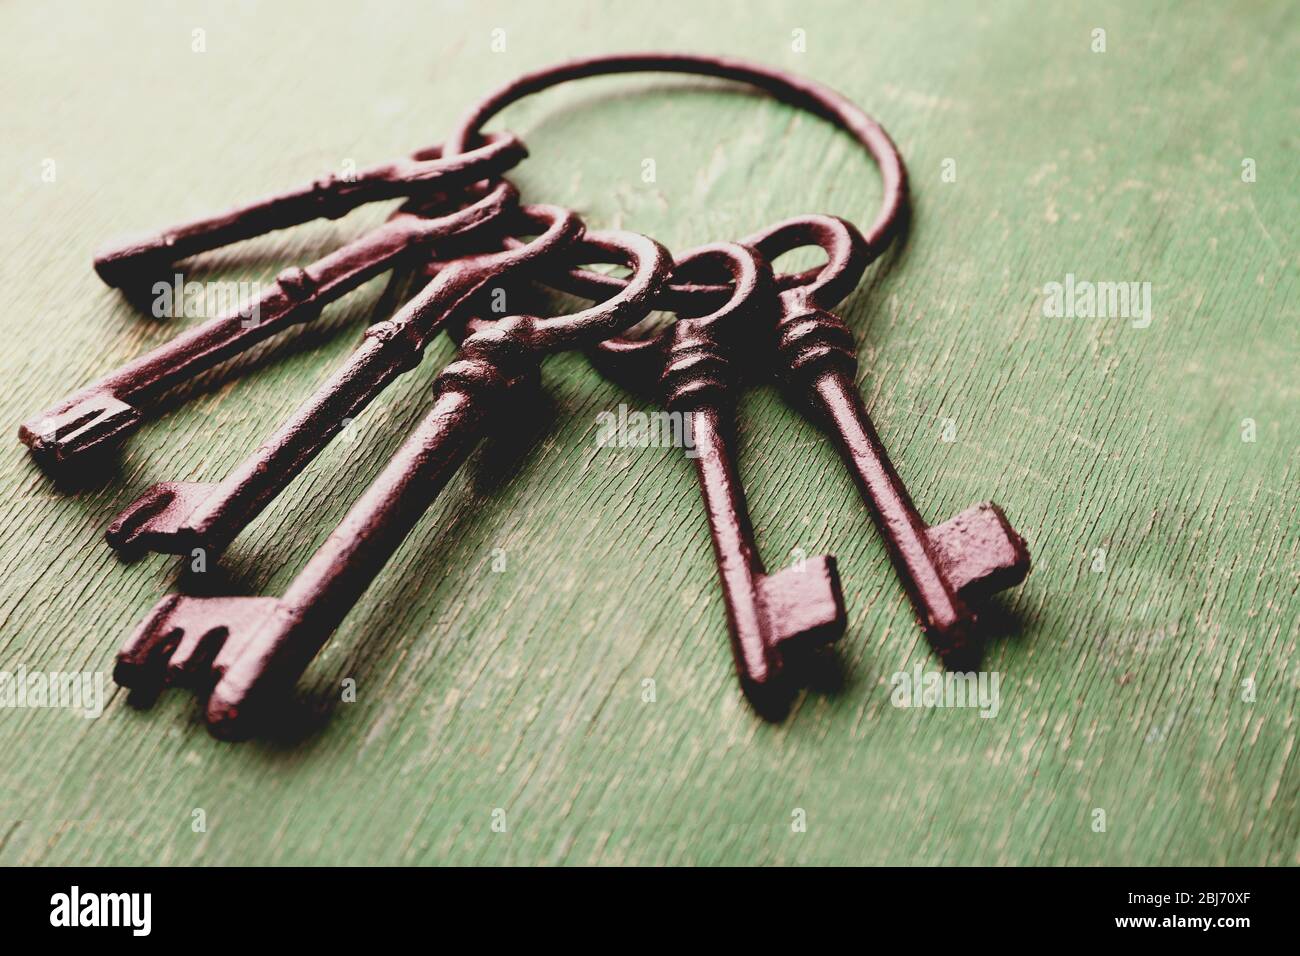 Ein Haufen alter Schlüssel auf grün verkratztem Holzhintergrund, Nahaufnahme Stockfoto